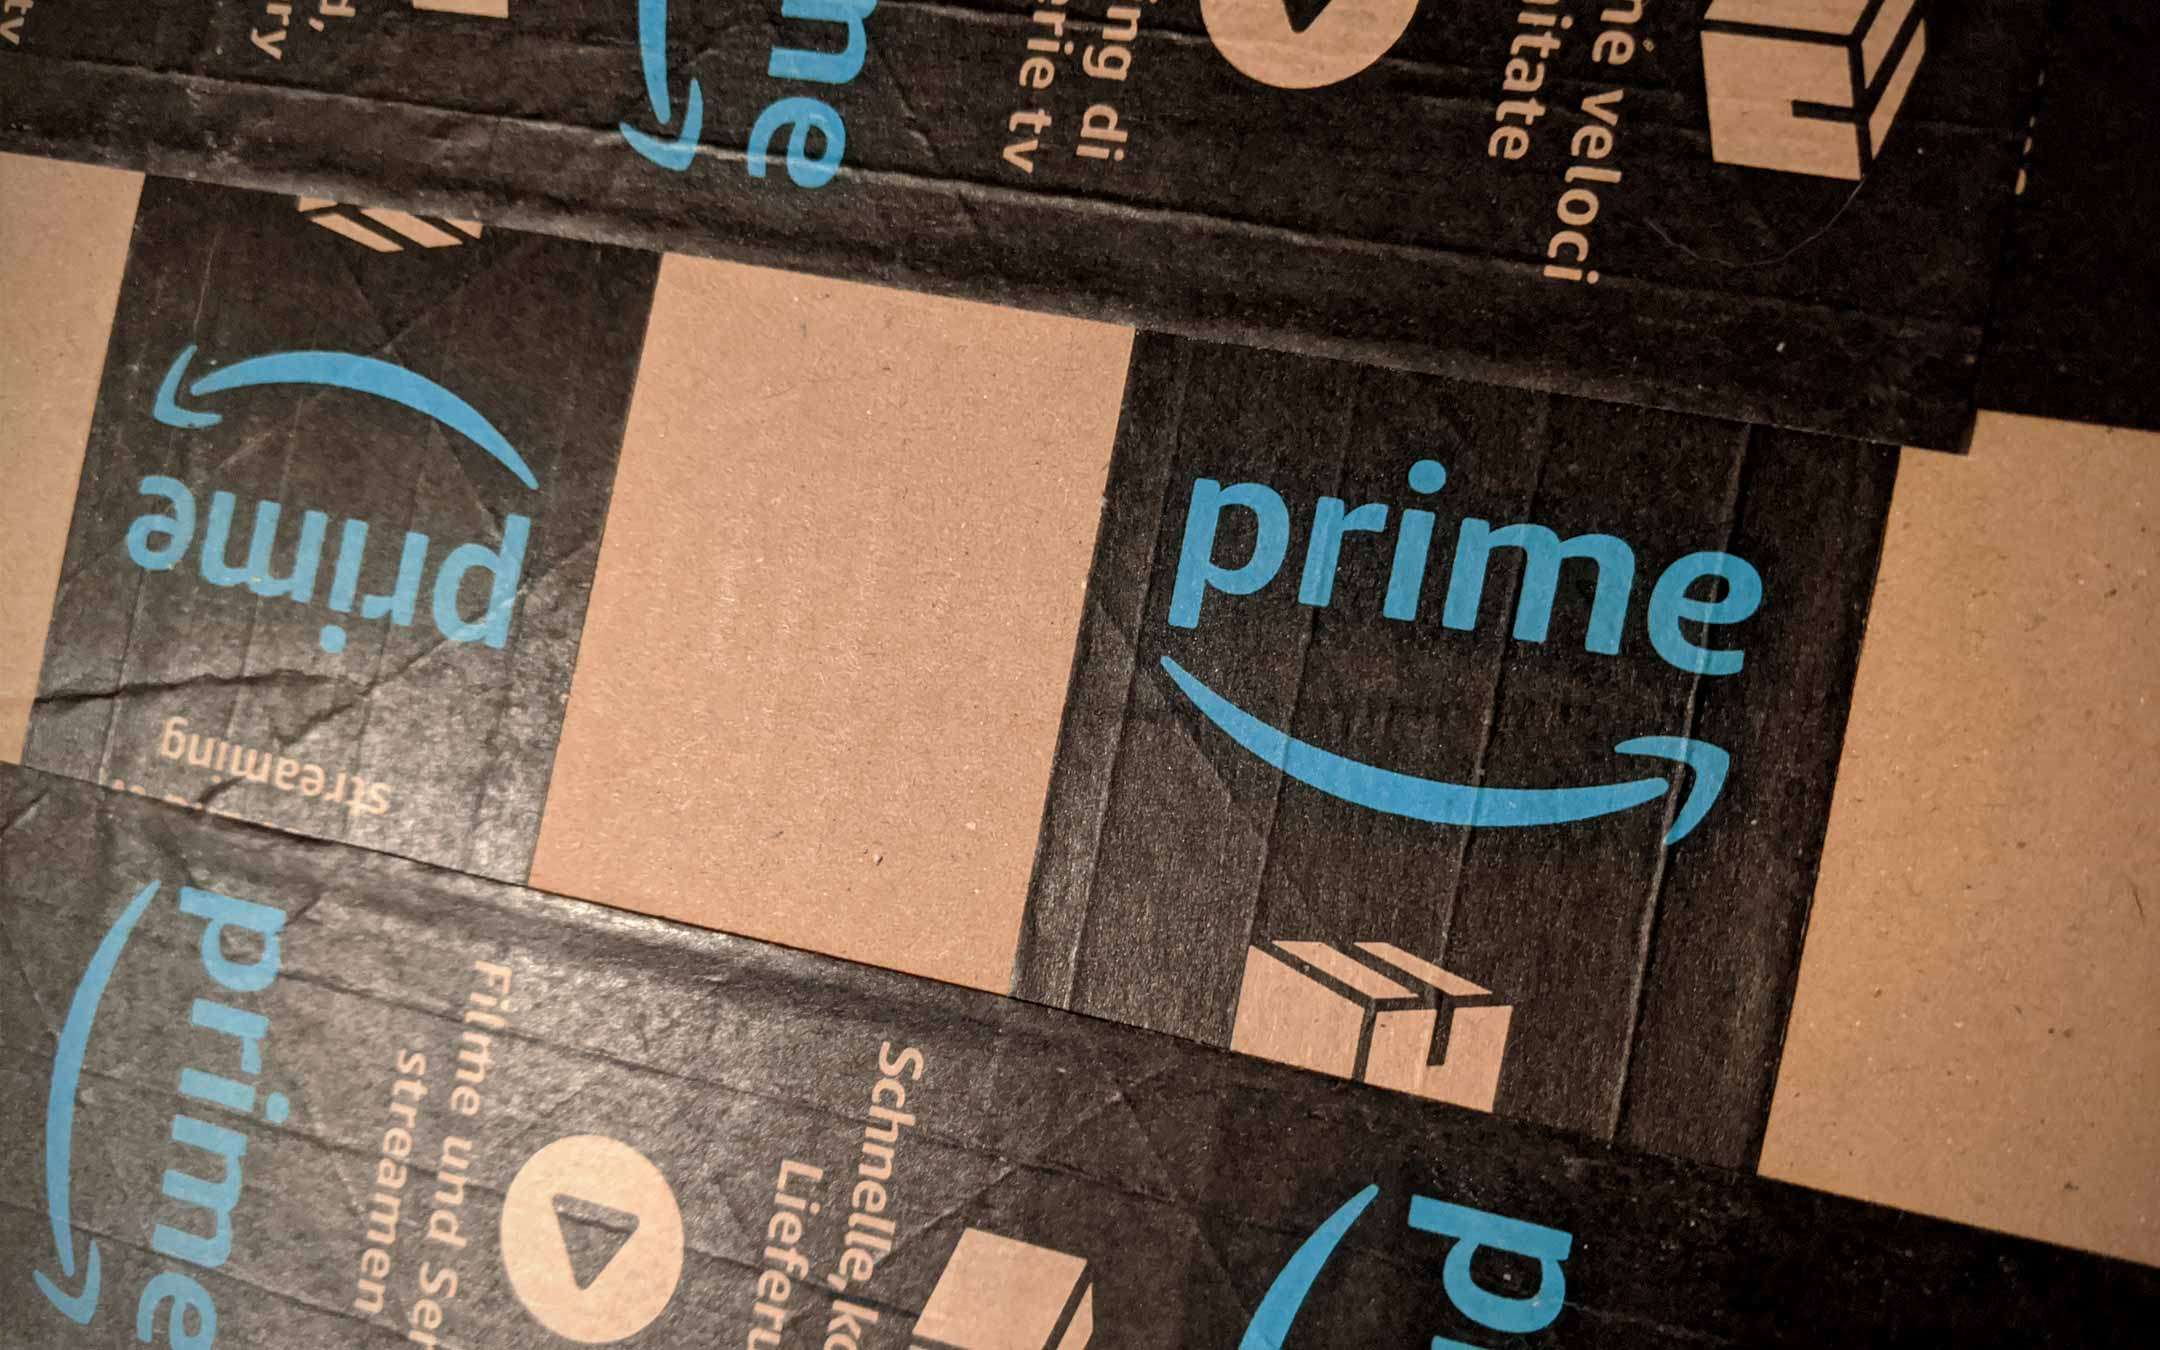 Amazon: per ora solo prodotti di prima necessità